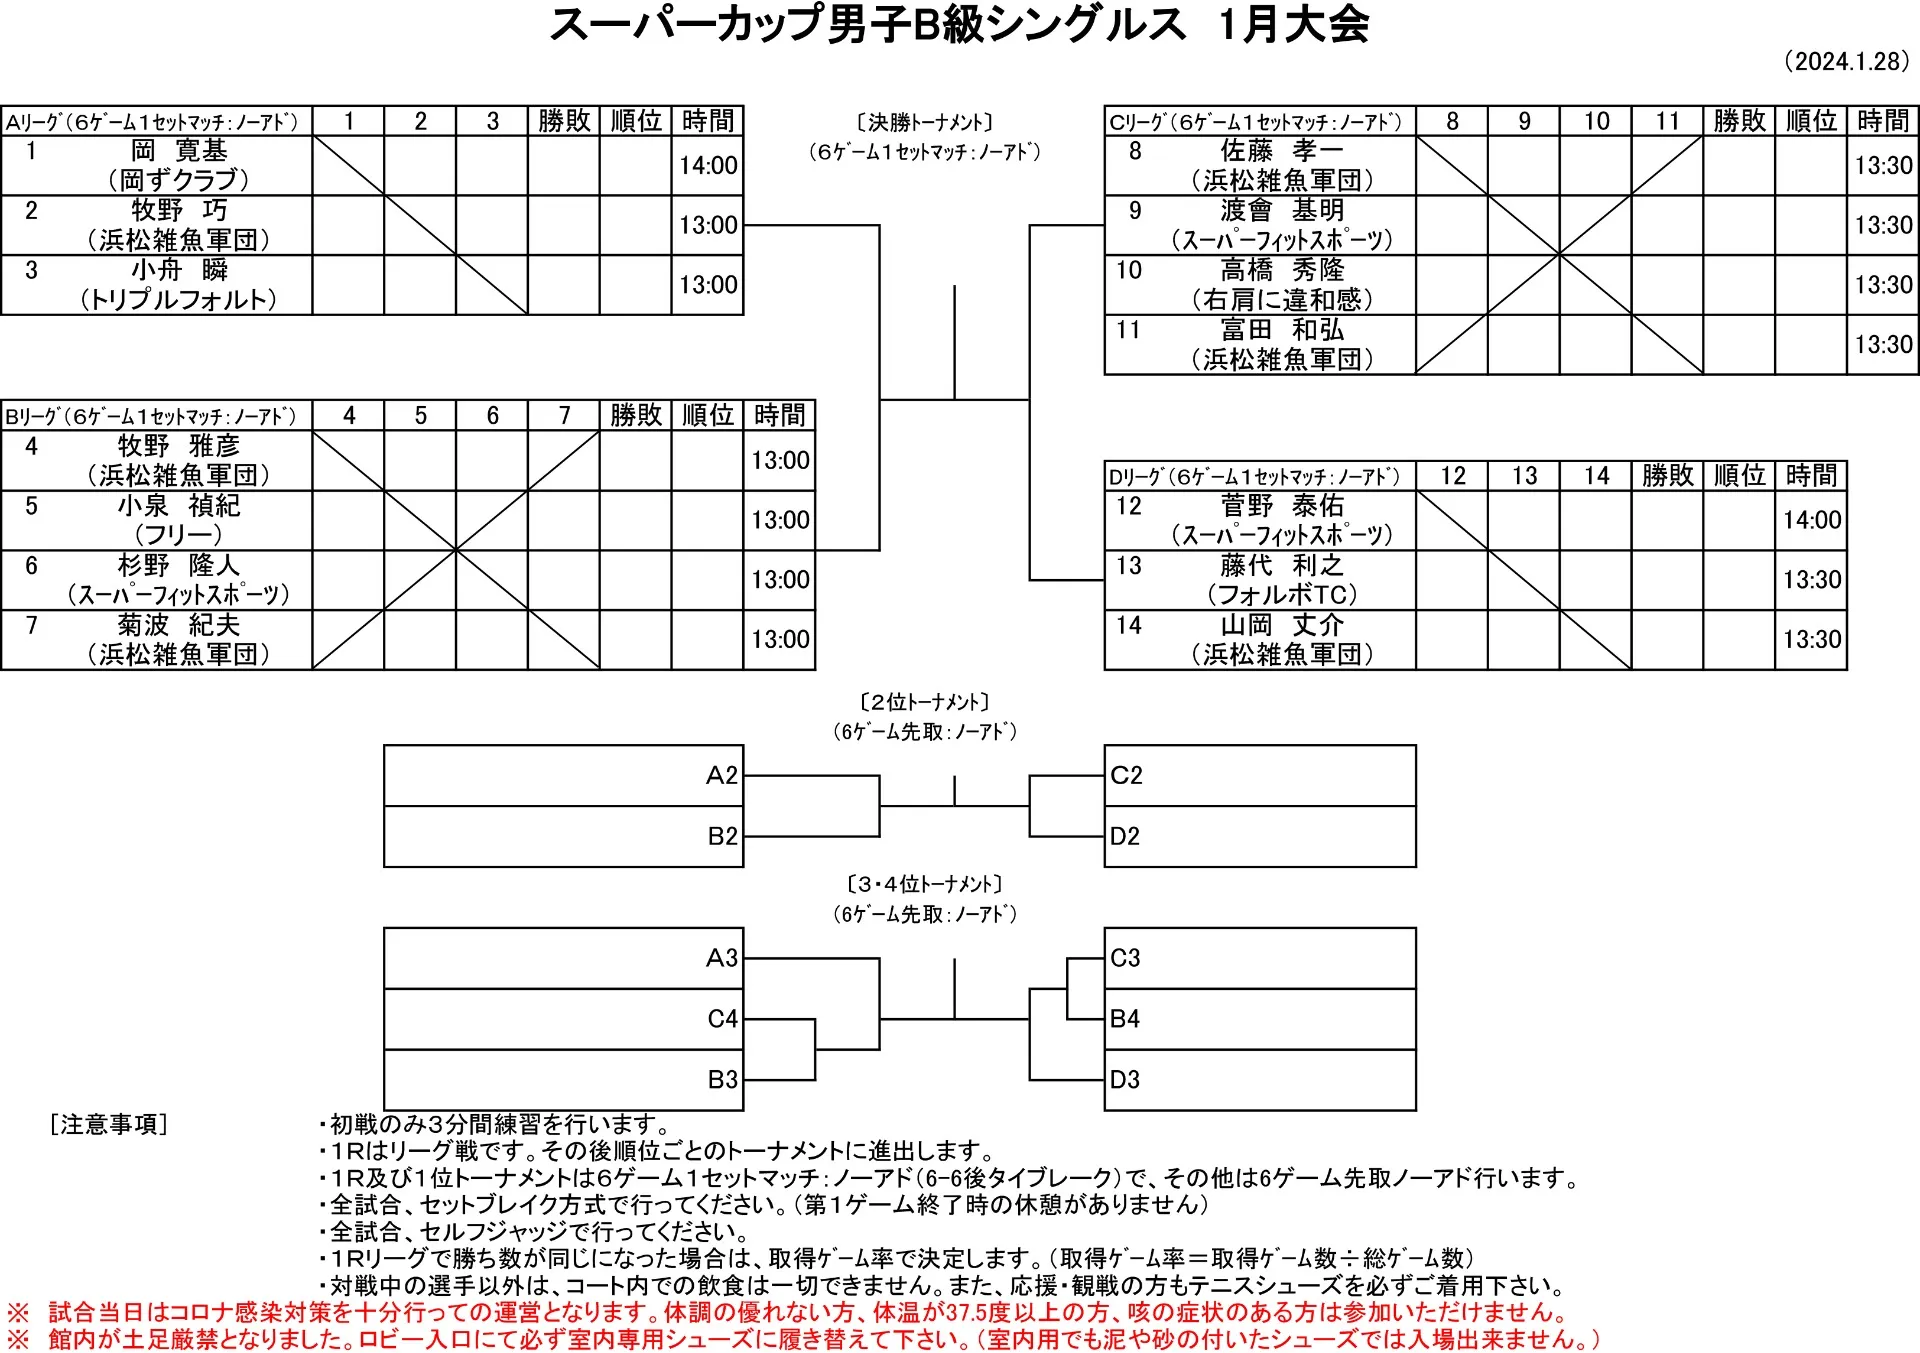 【試合ドロー発表】1/28（日）男子B級シングルス